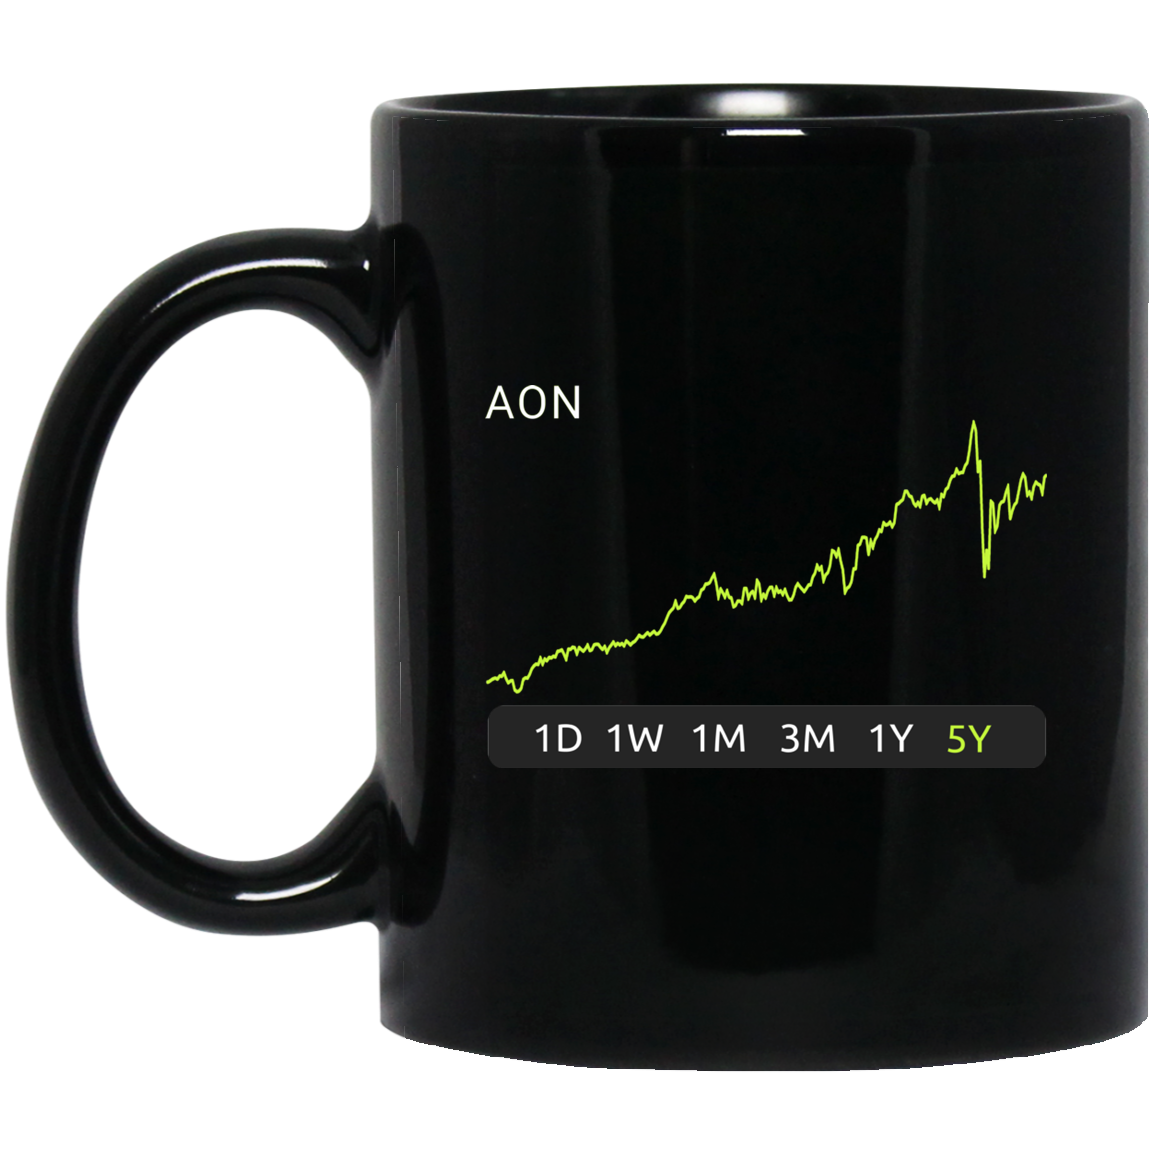 AON Stock 5y Mug